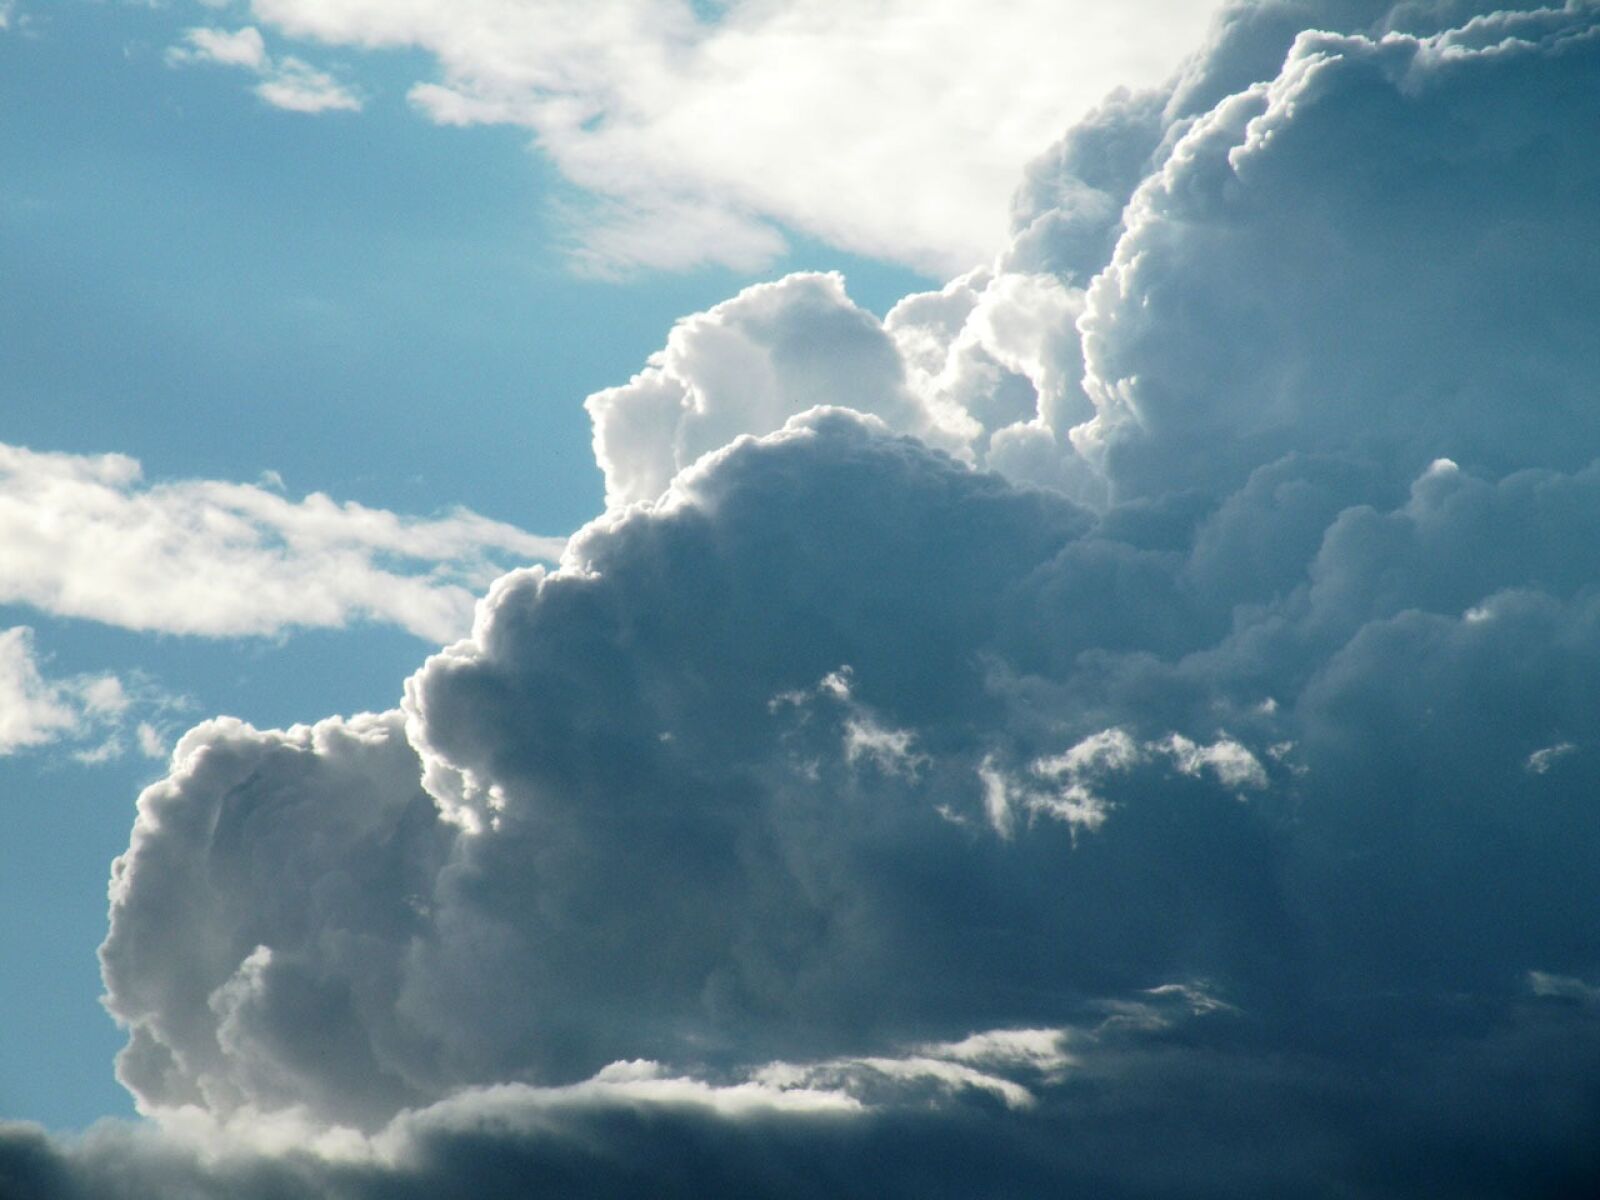 Nikon Coolpix P80 sample photo. Cloudy, clouds, cloudscape photography